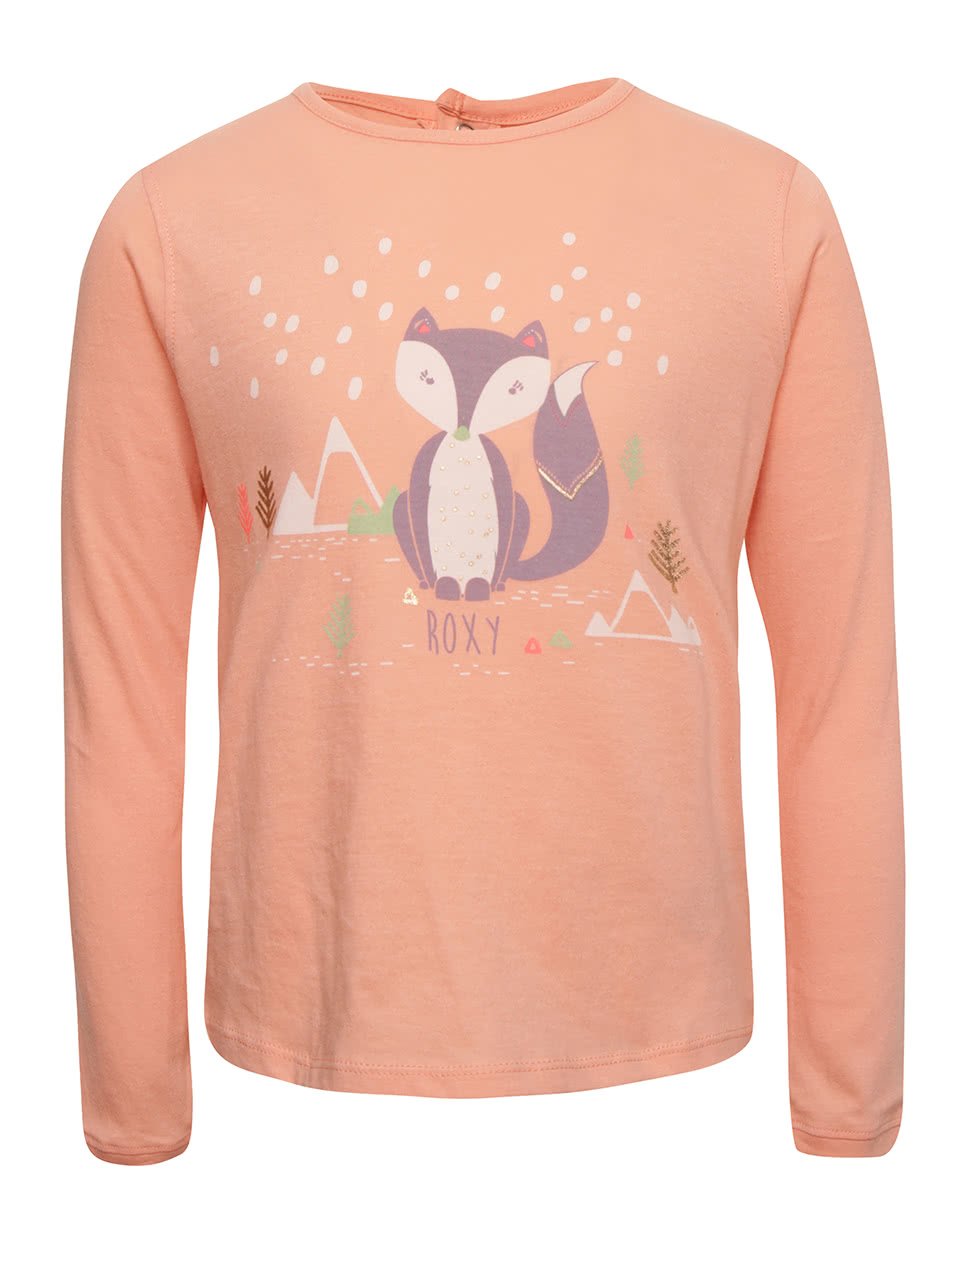 Meruňkové holčičí tričko s motivem lišky a dlouhým rukávem Roxy